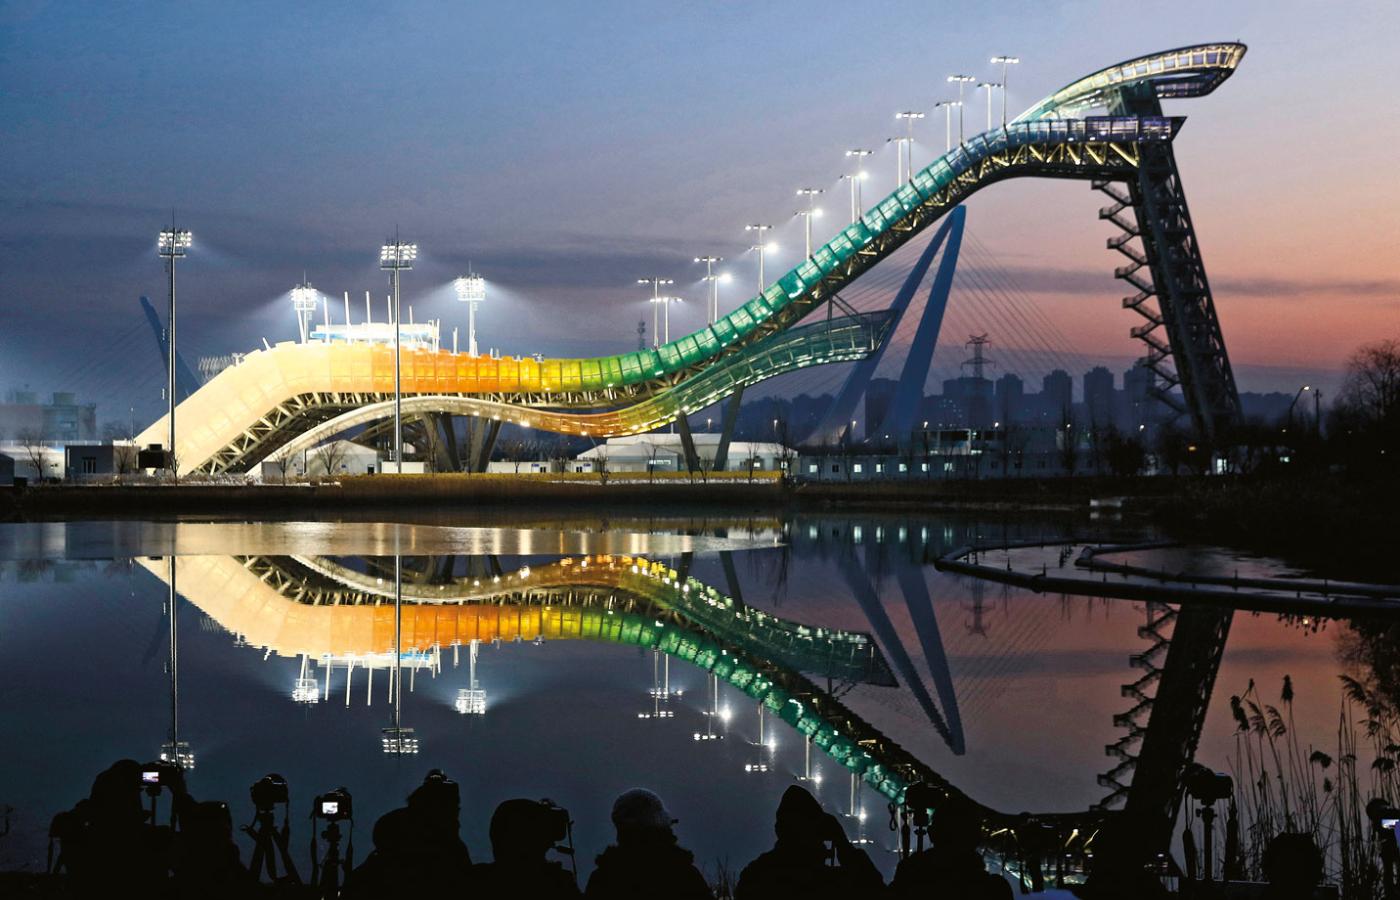 Skocznia zbudowana w Pekinie – wiele innych obiektów olimpijskich znajduje się kilkadziesiąt kilometrów od stolicy Chin.